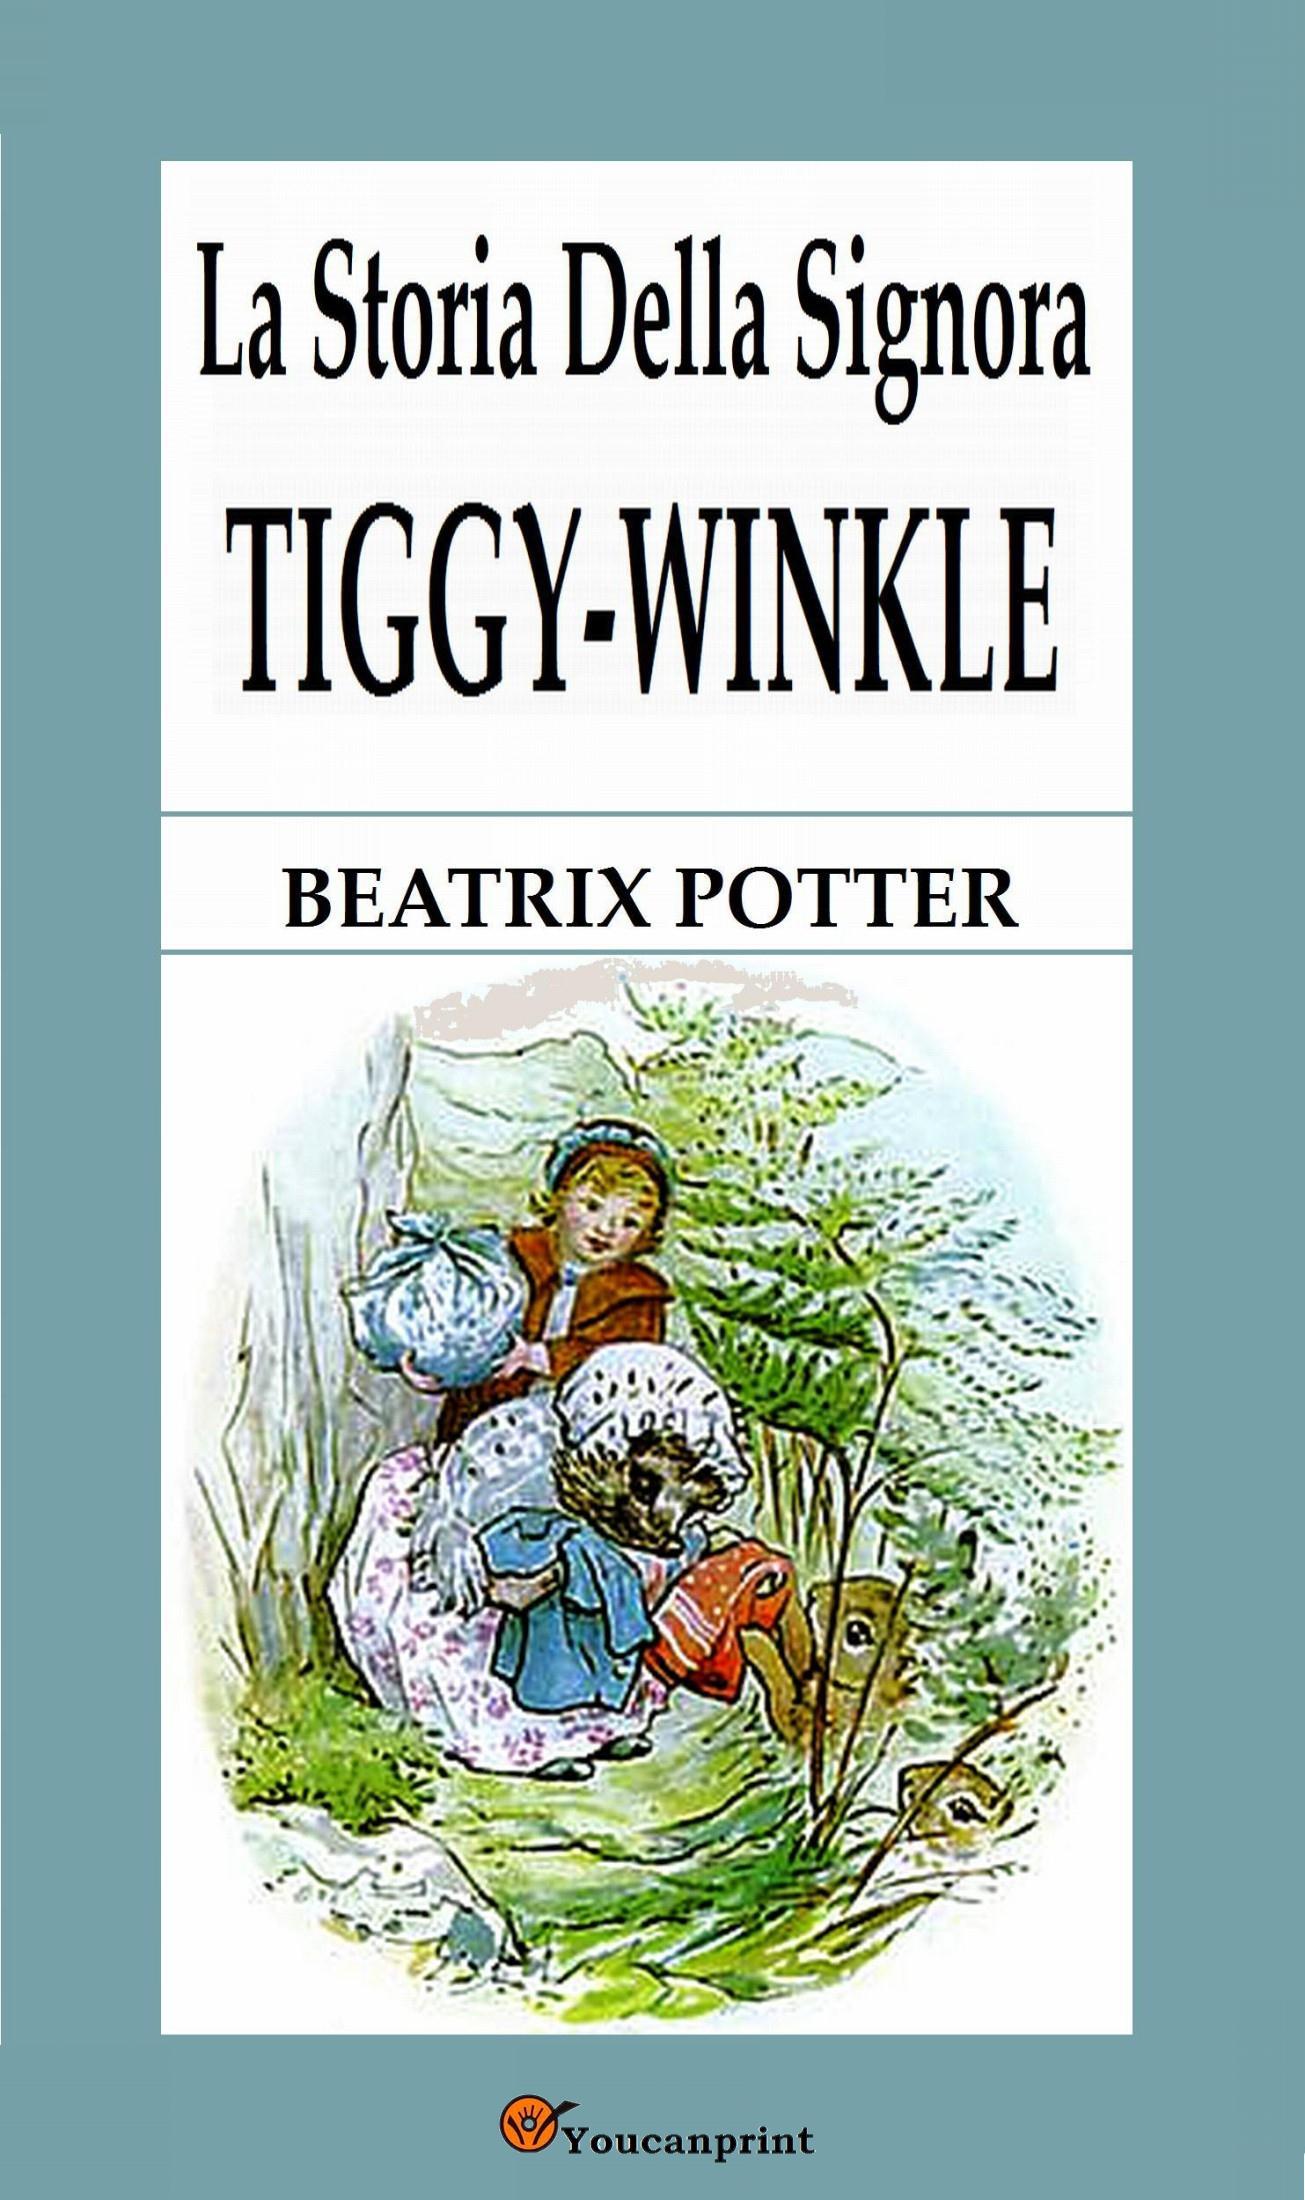 La storia della signora Tiggy-Winkle